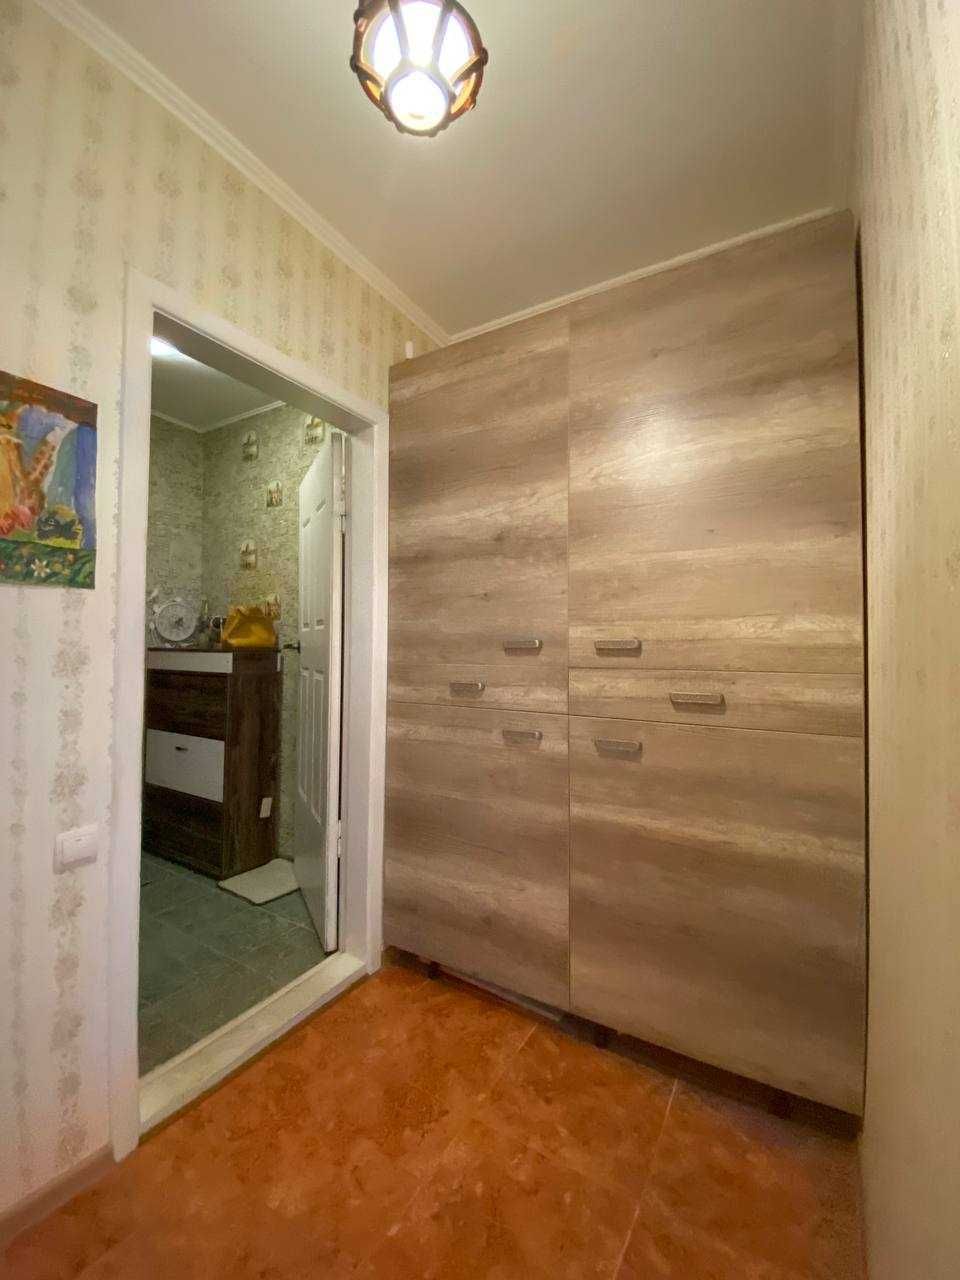 3 комнатная  квартира на Высоцкого/ Семена Палия